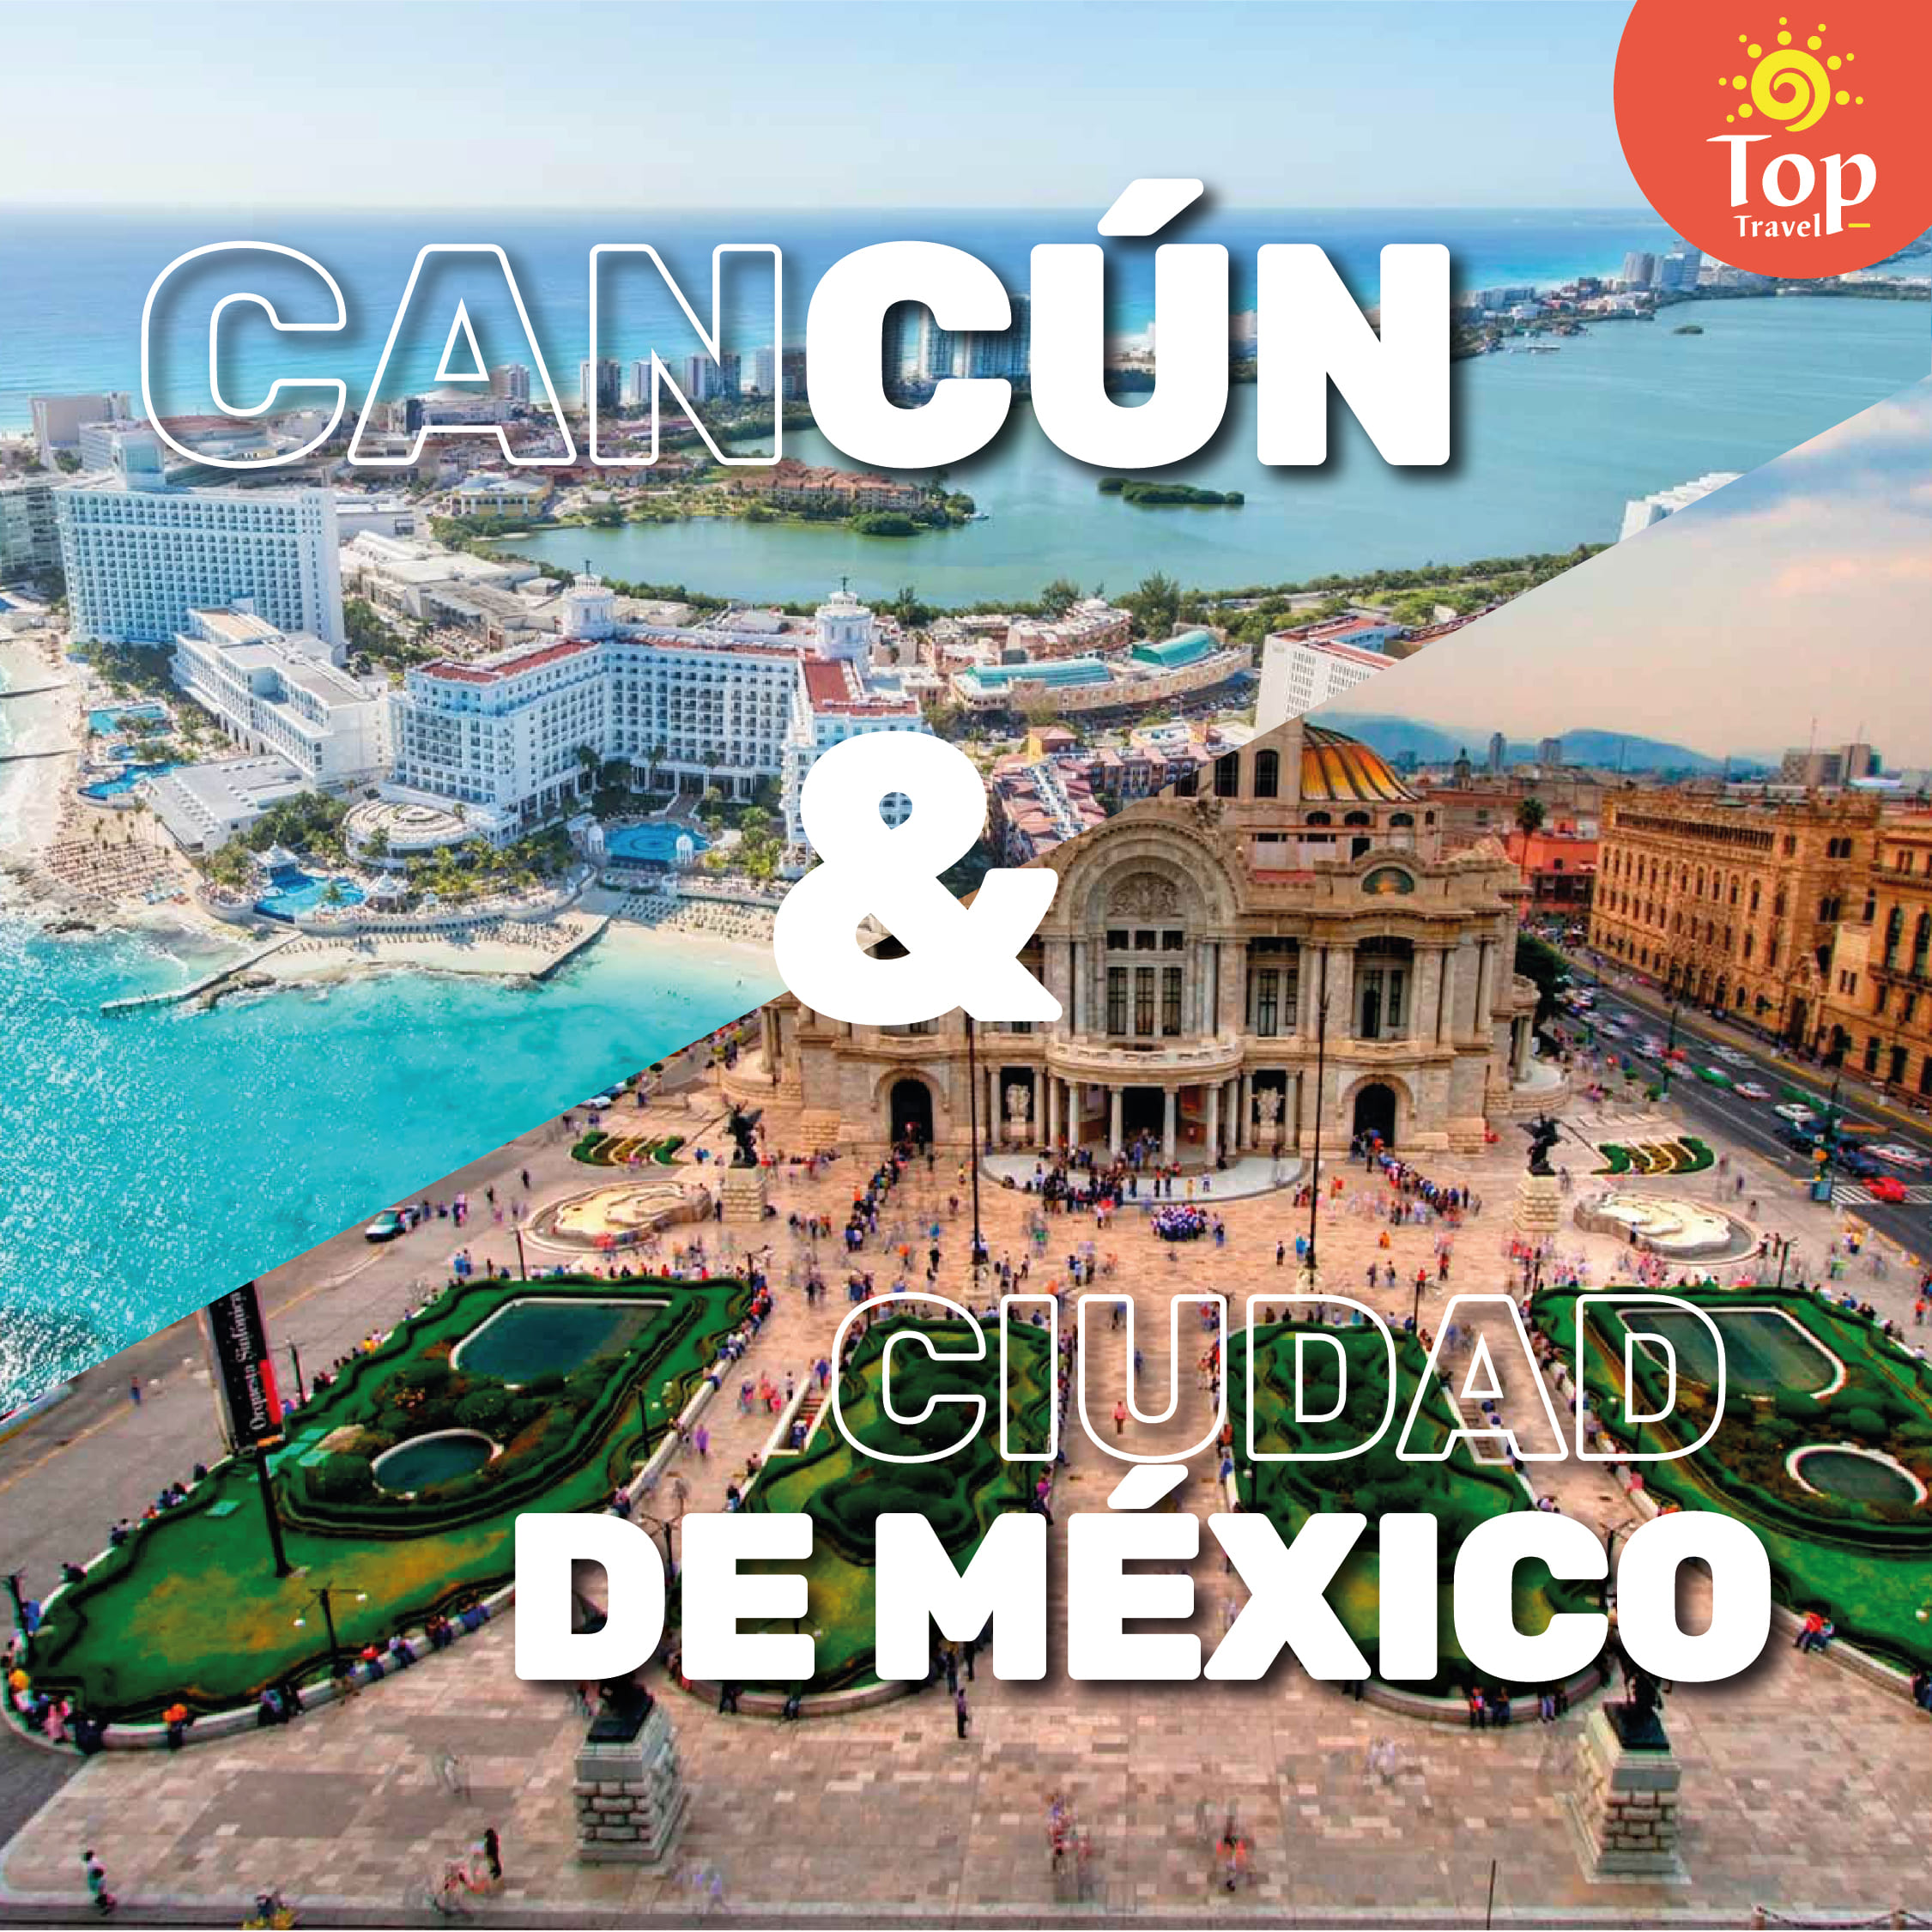 Cancún y Ciudad de Mexico combinado viajes a Mexico tiquetes para mexico tiquetes para Cancún - Top Travel (1)